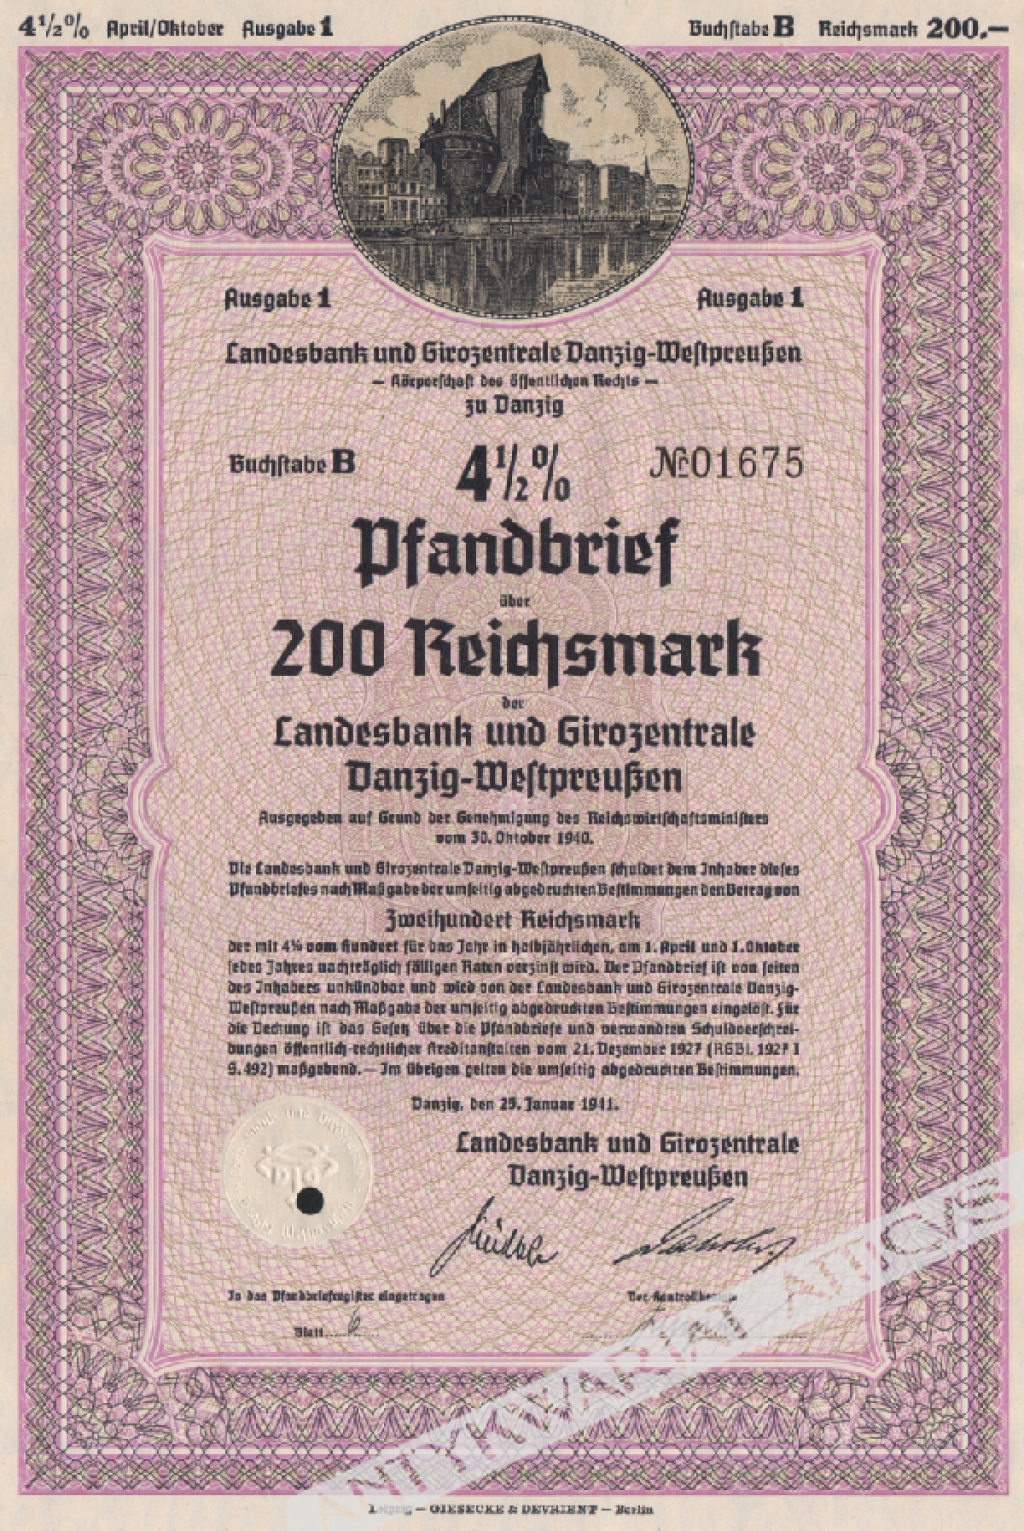 [list zastawny] 4 1/2% Pfandbrief uber 200 Reichsmark der Landesbank und Girozentrale Danzig-Westpreussen